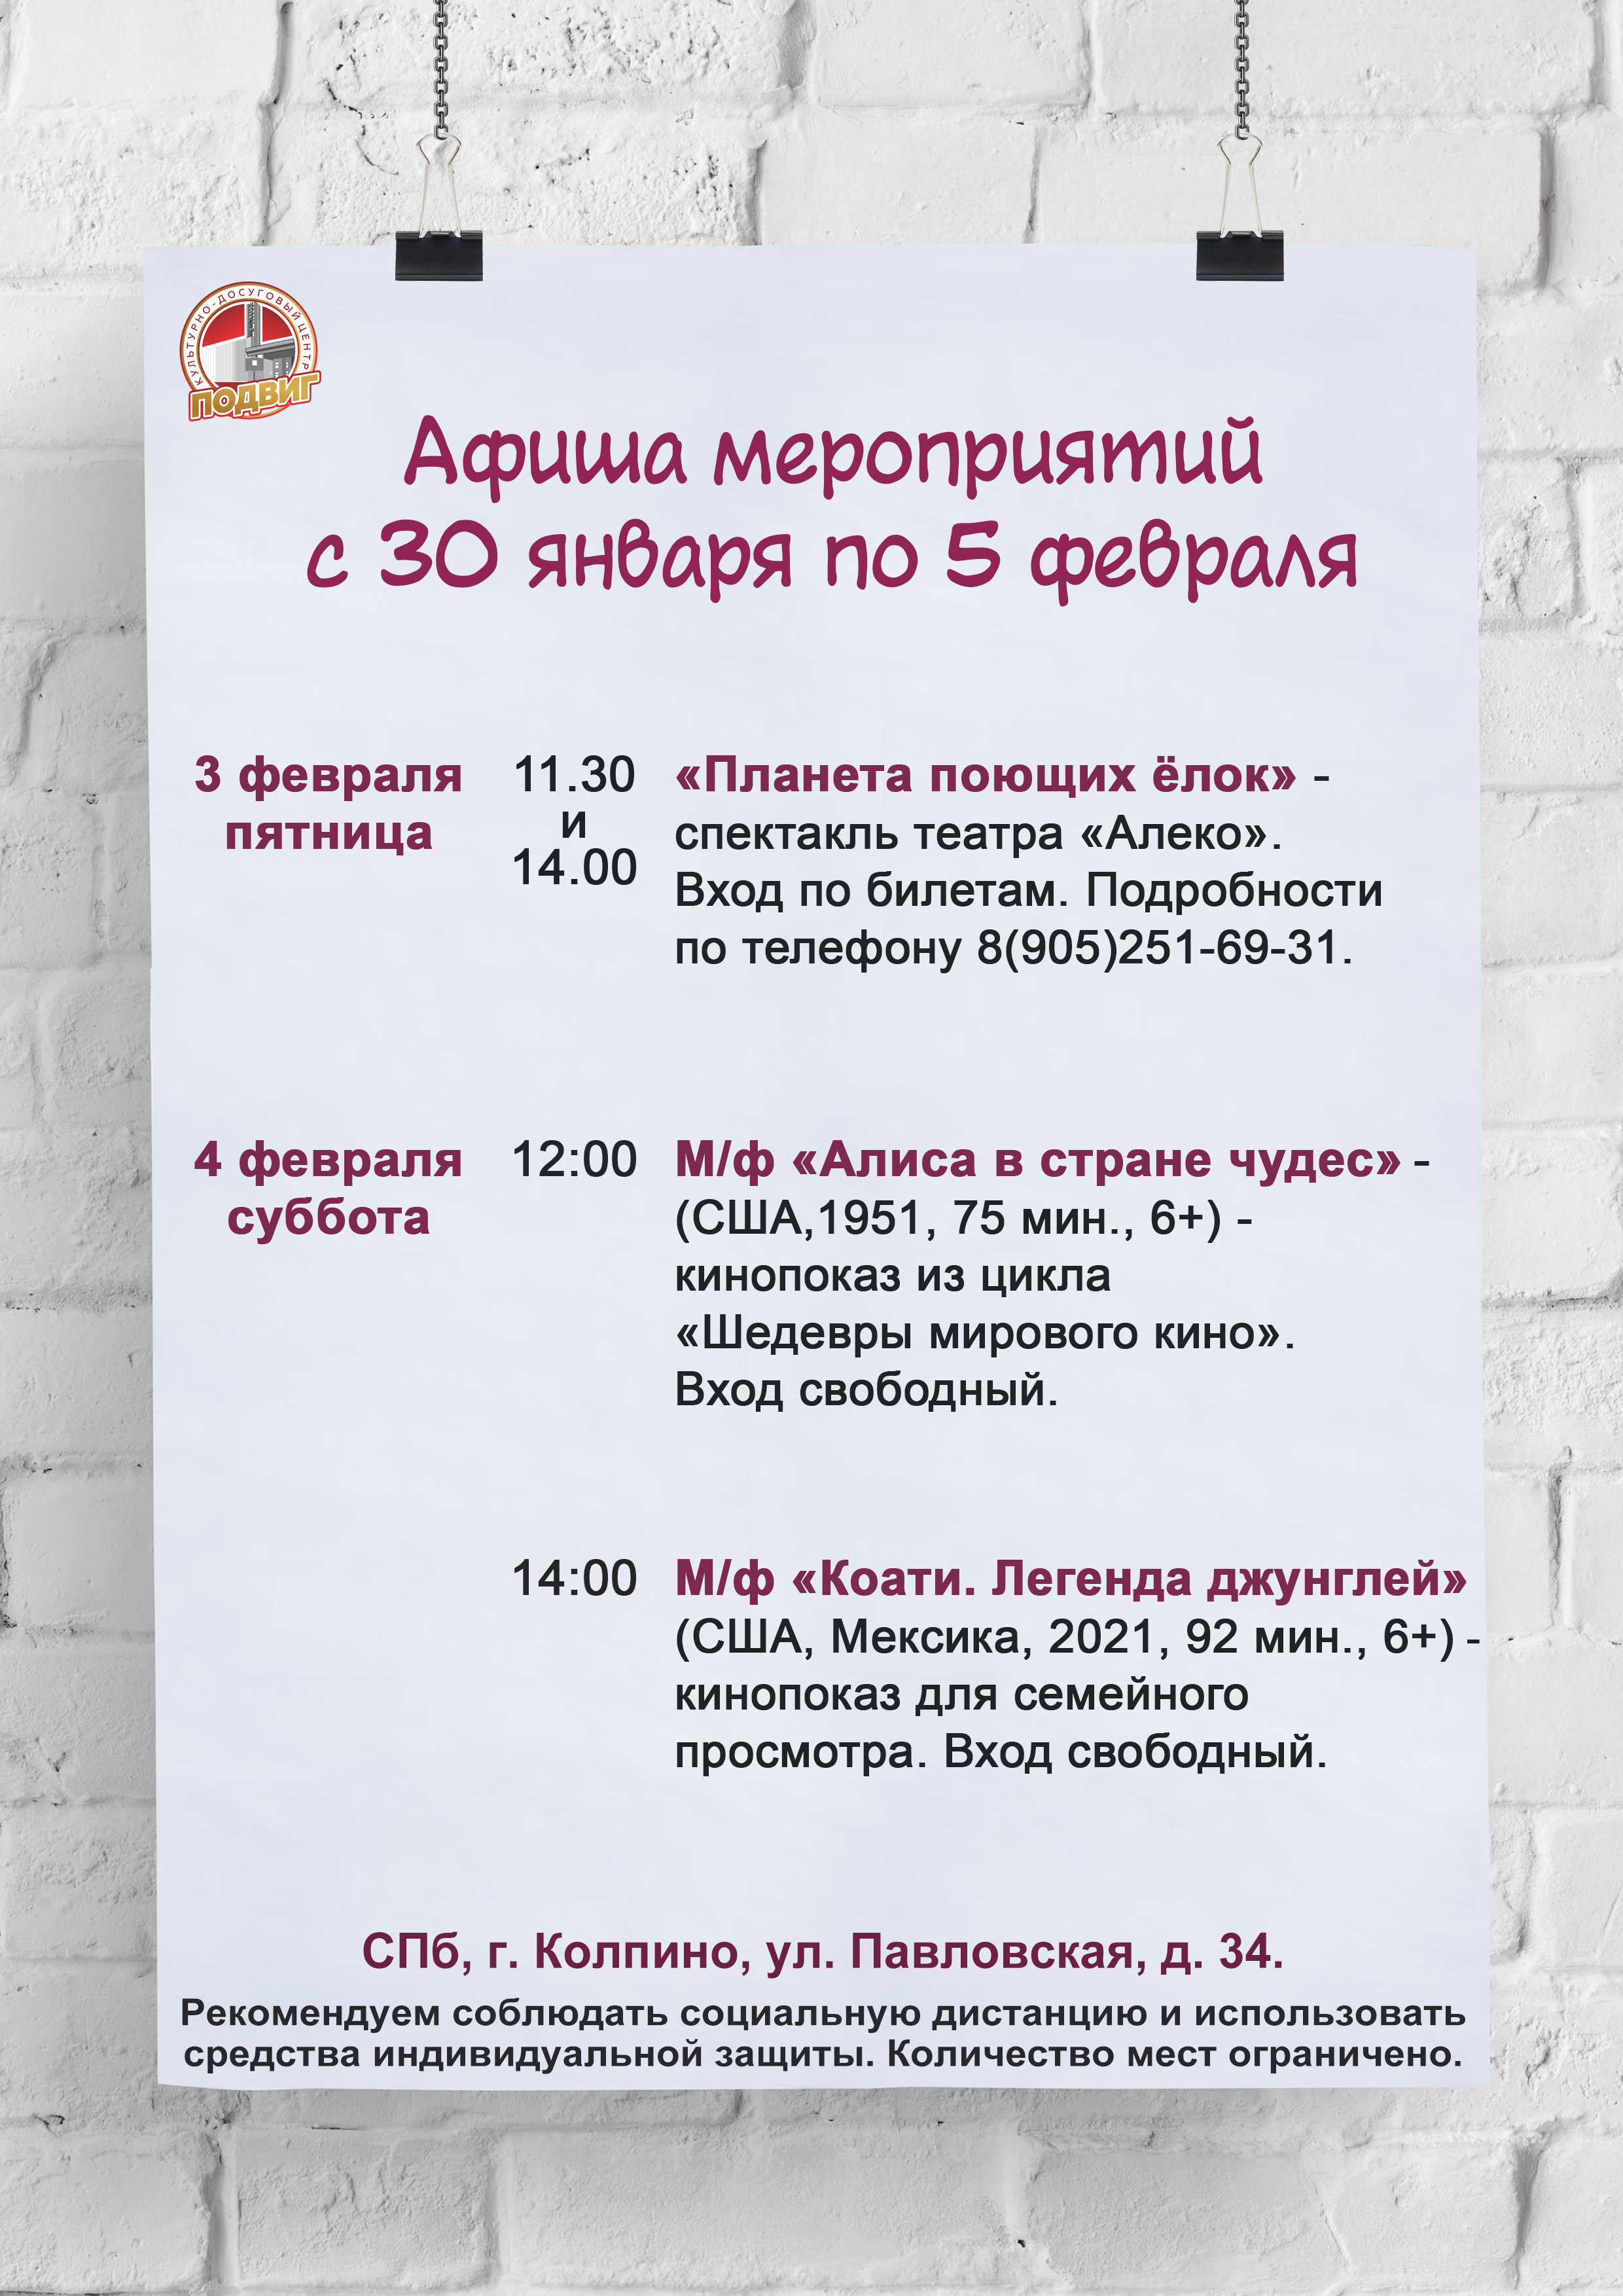 Афиша мероприятий КДЦ "Подвиг" с 30 января по 5 февраля